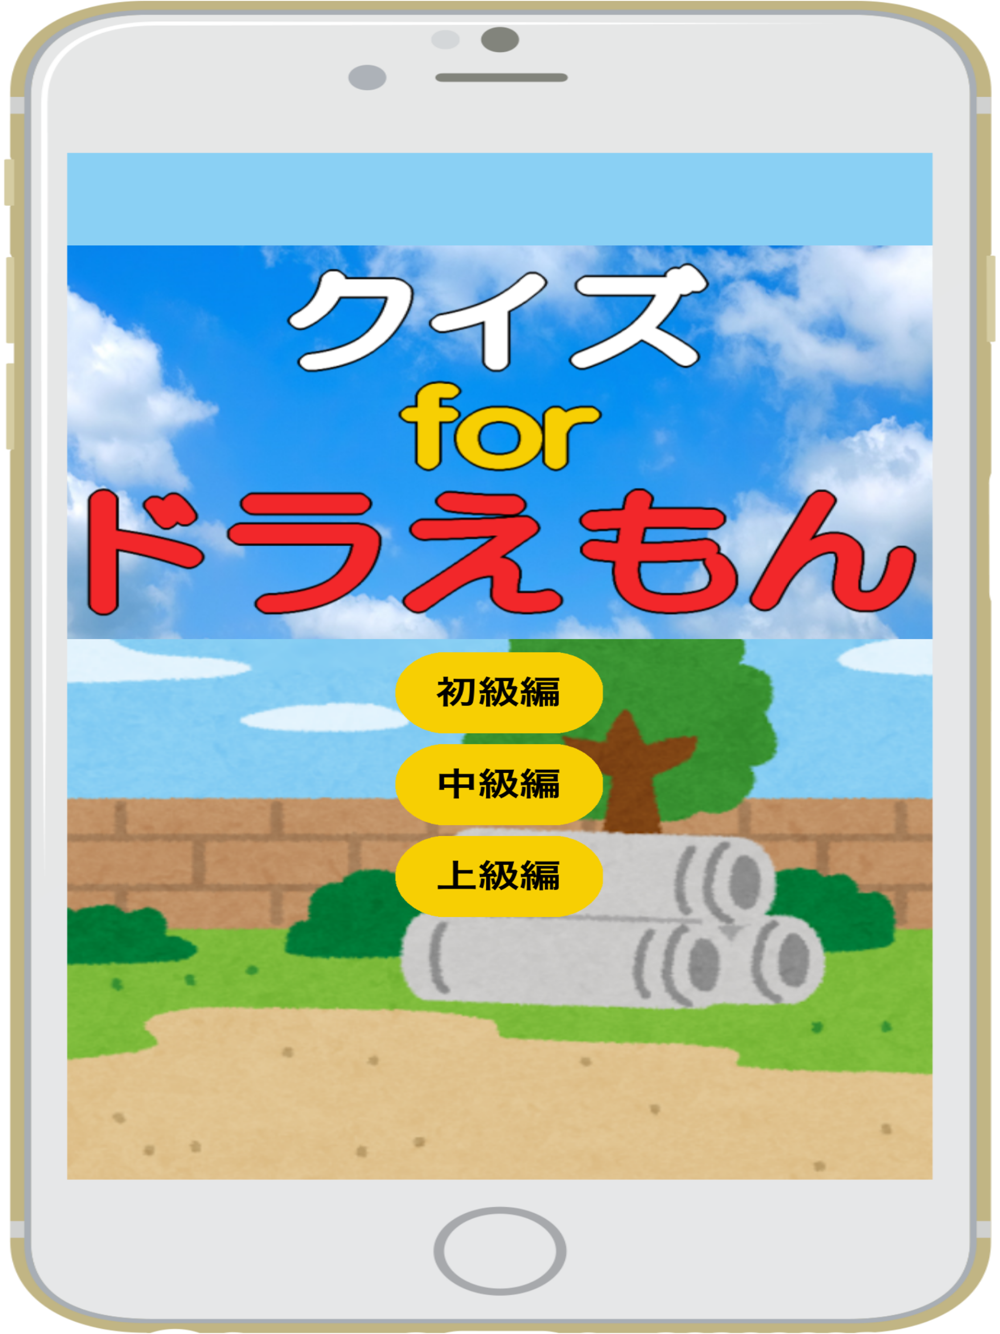 クイズforドラえもん Quiz For Doraemon Free Download App For Iphone Steprimo Com